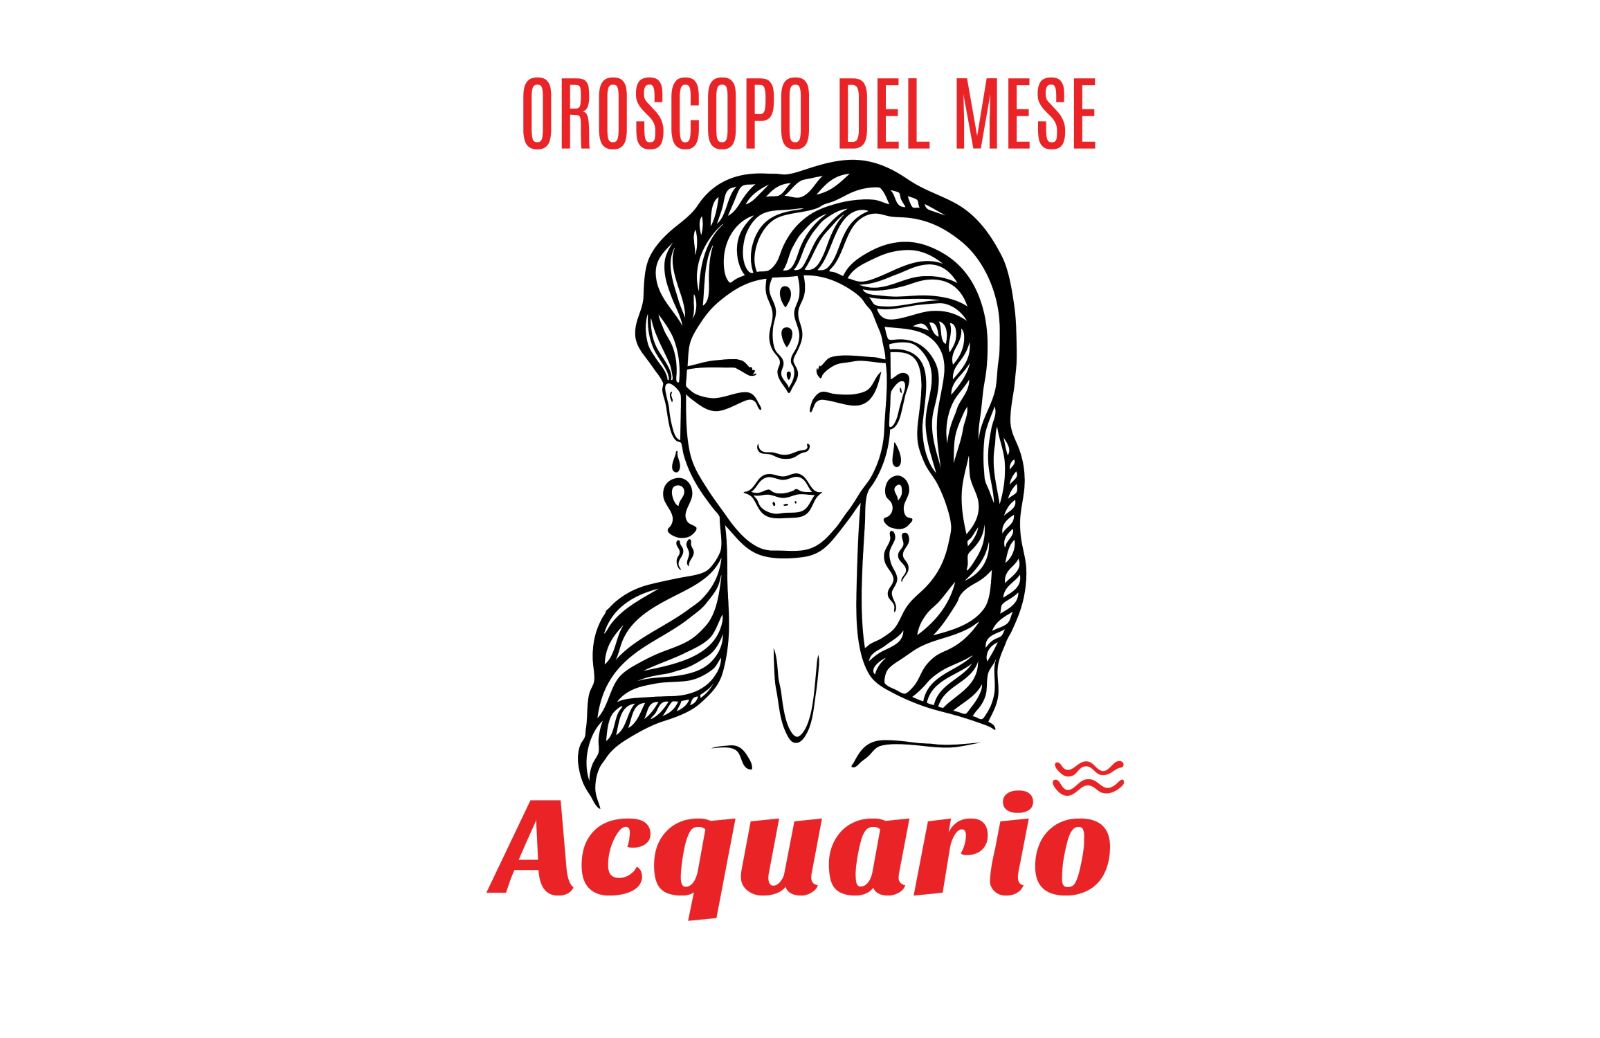 Oroscopo del mese: Acquario - maggio 2019